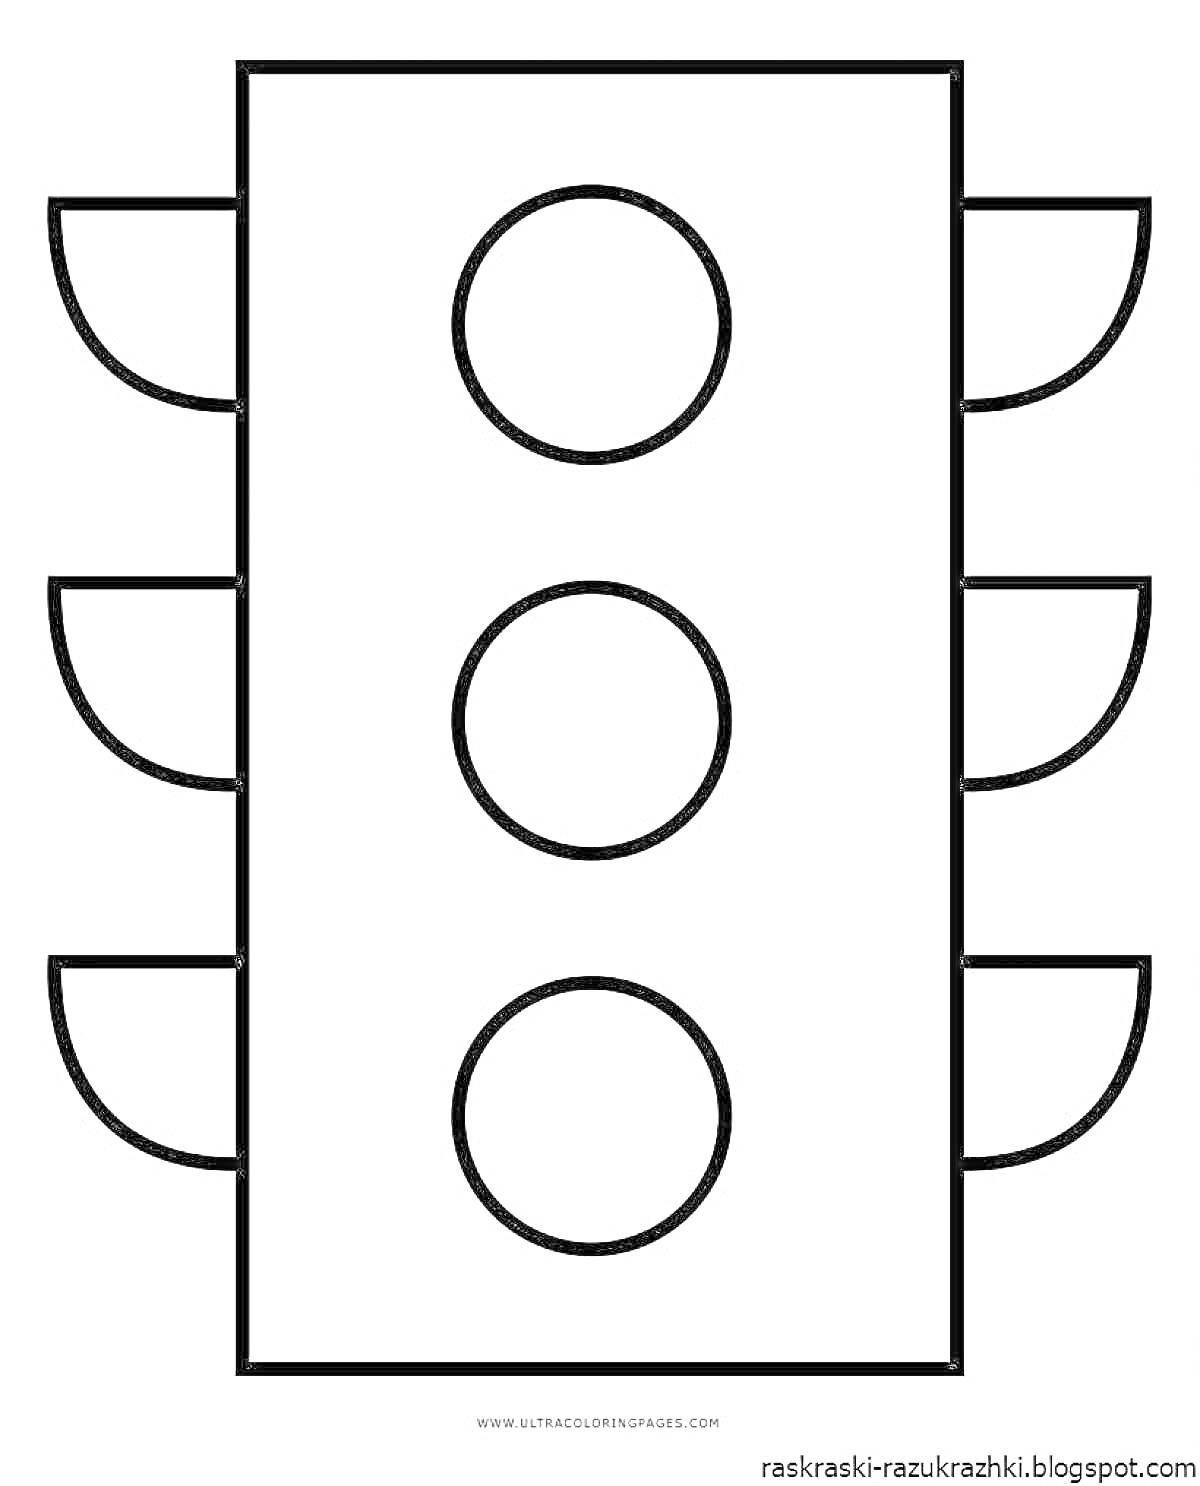 Раскраска Раскраска светофора с тремя секциями